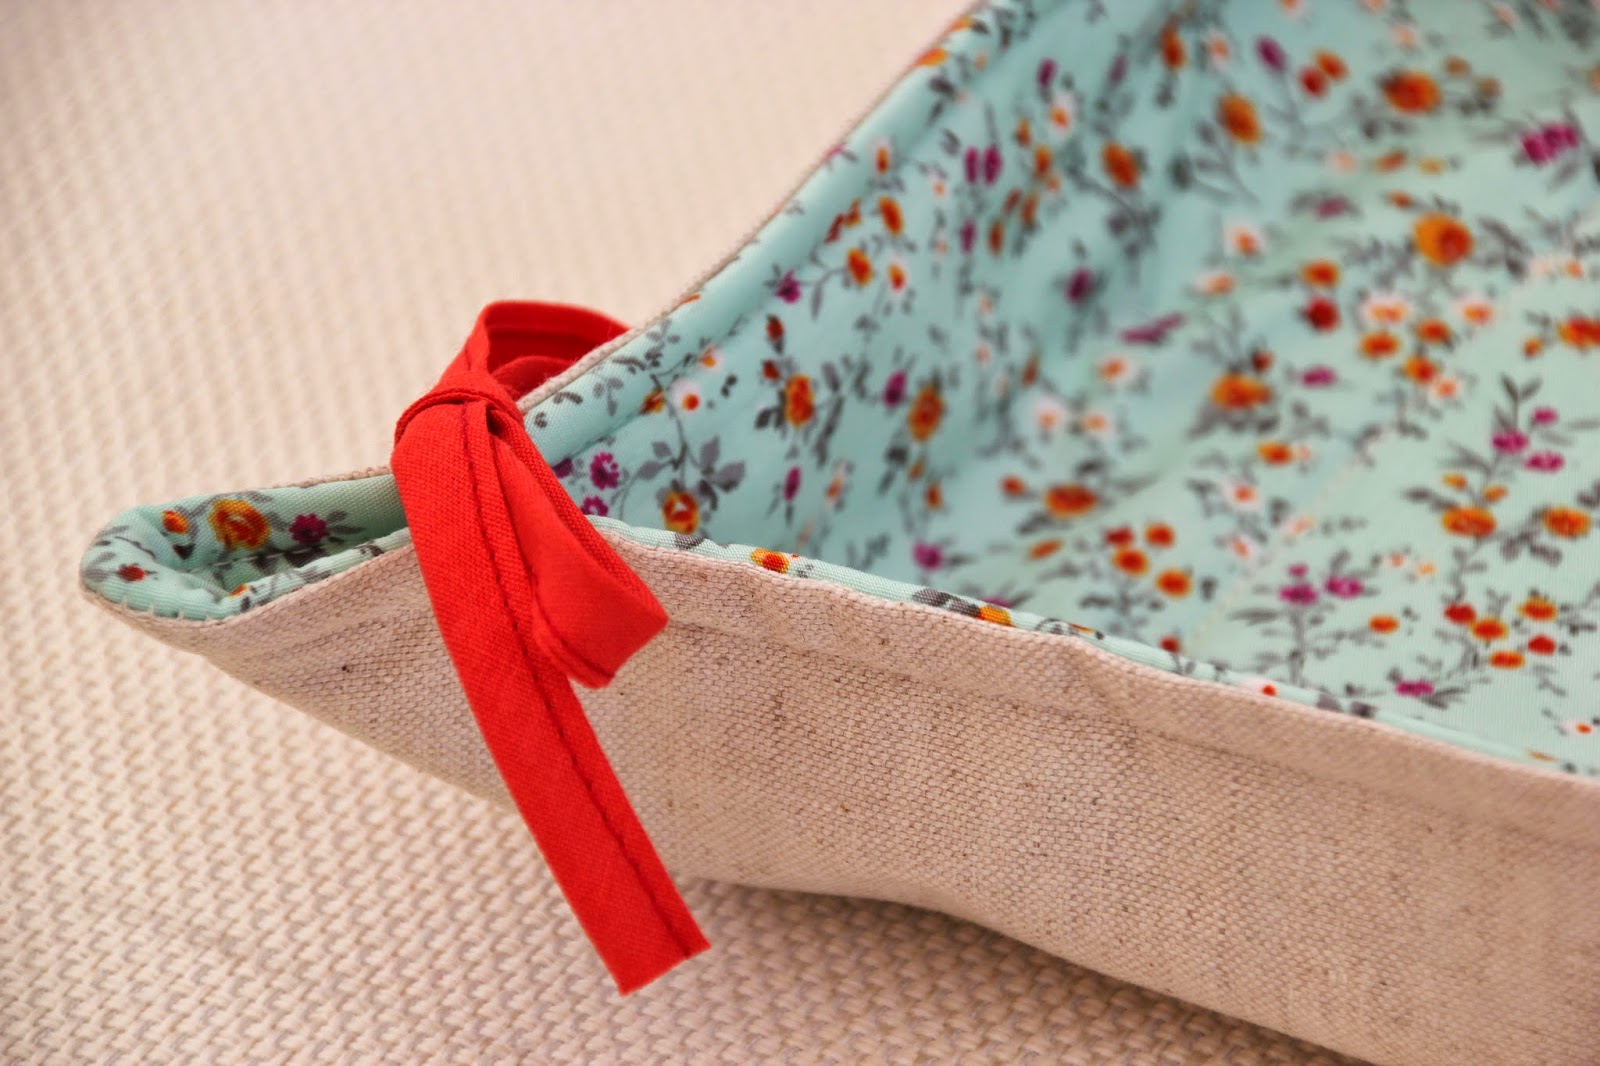 Clase de costura 8. Costura práctica: cómo hacer una panera de tela.